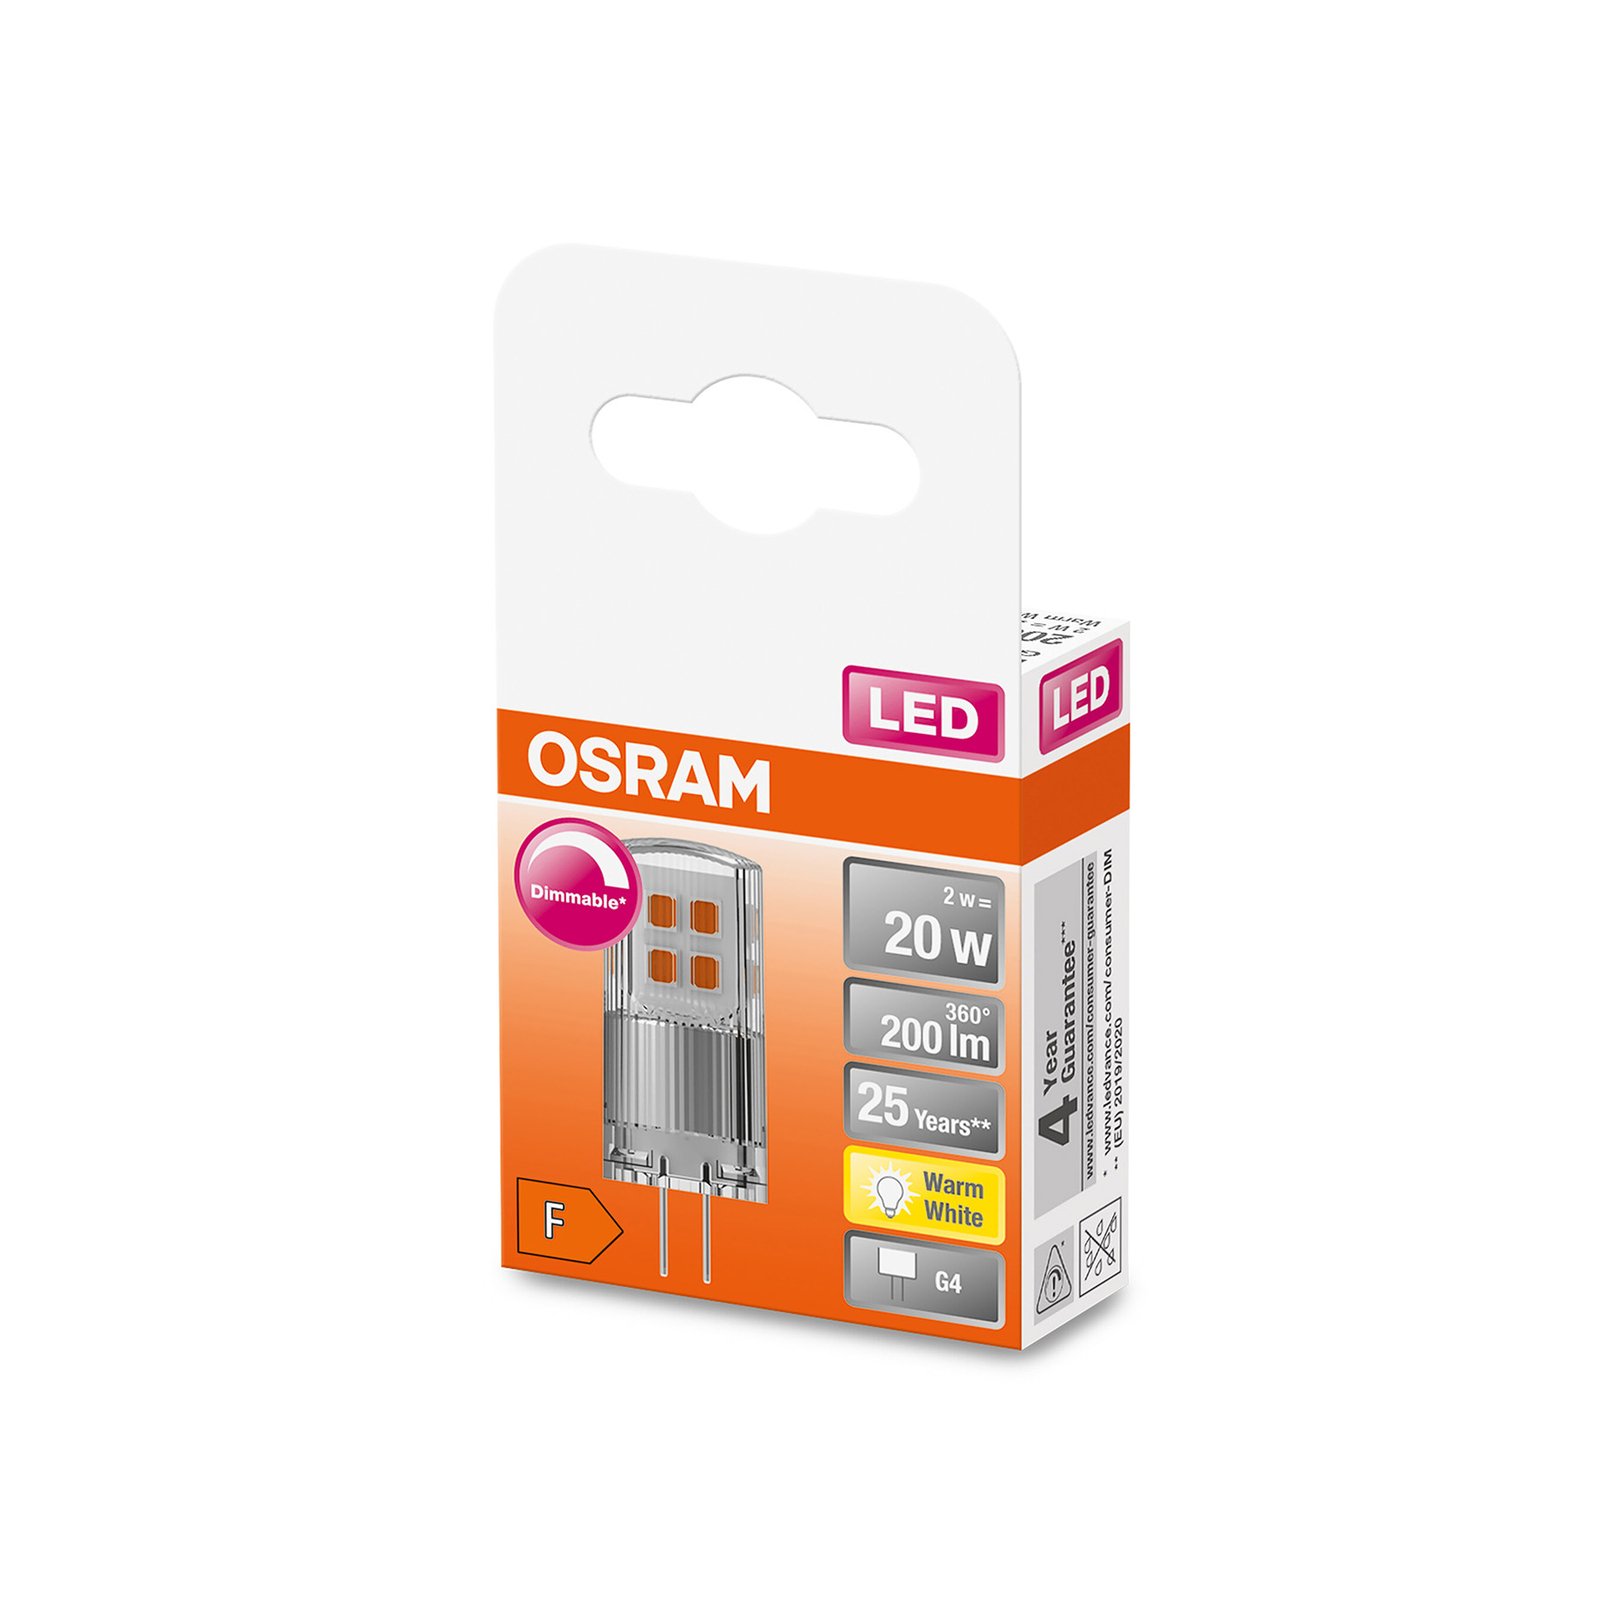 OSRAM PIN 12V LED pin bāzes G4 2W 200lm dimmējams